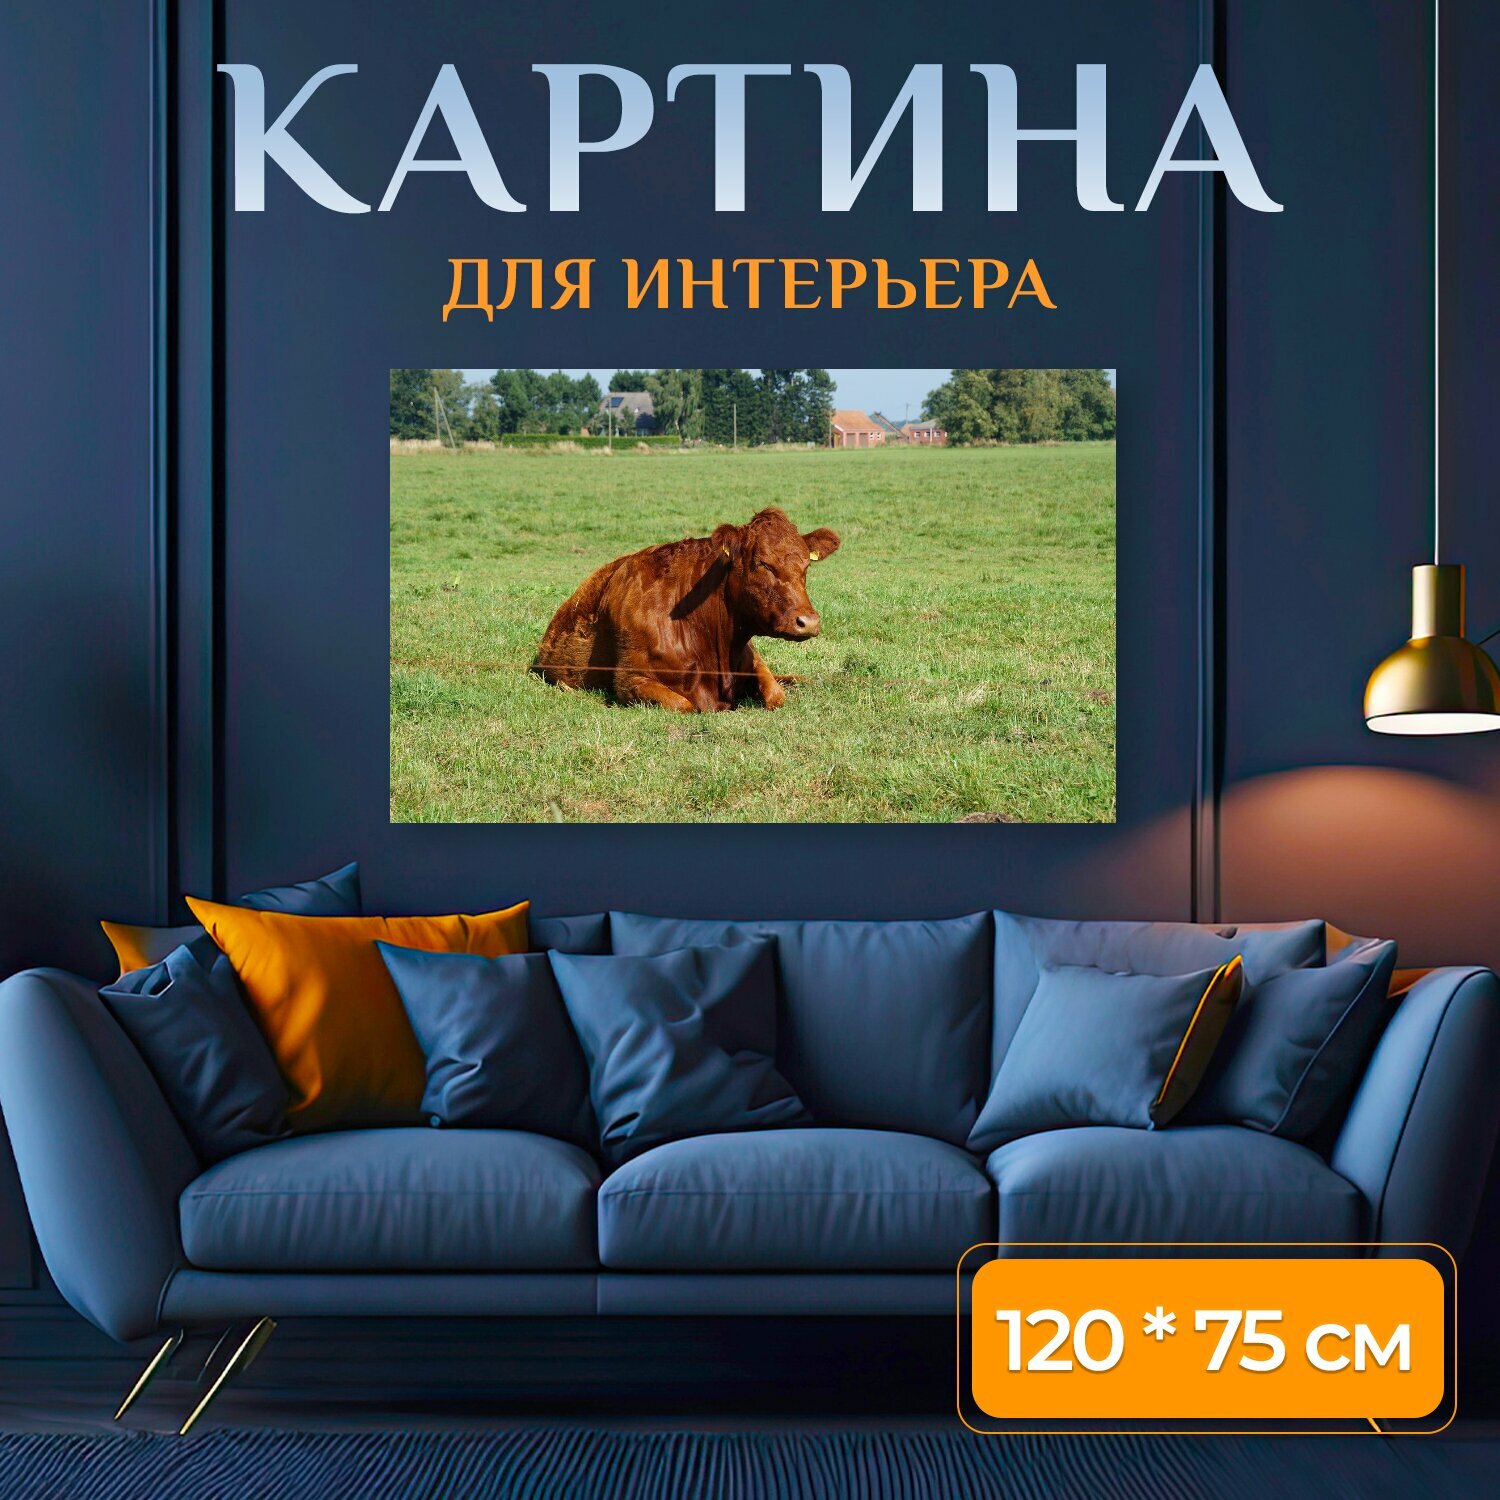 Картина на холсте "Говядина, животное, коричневый" на подрамнике 120х75 см. для интерьера